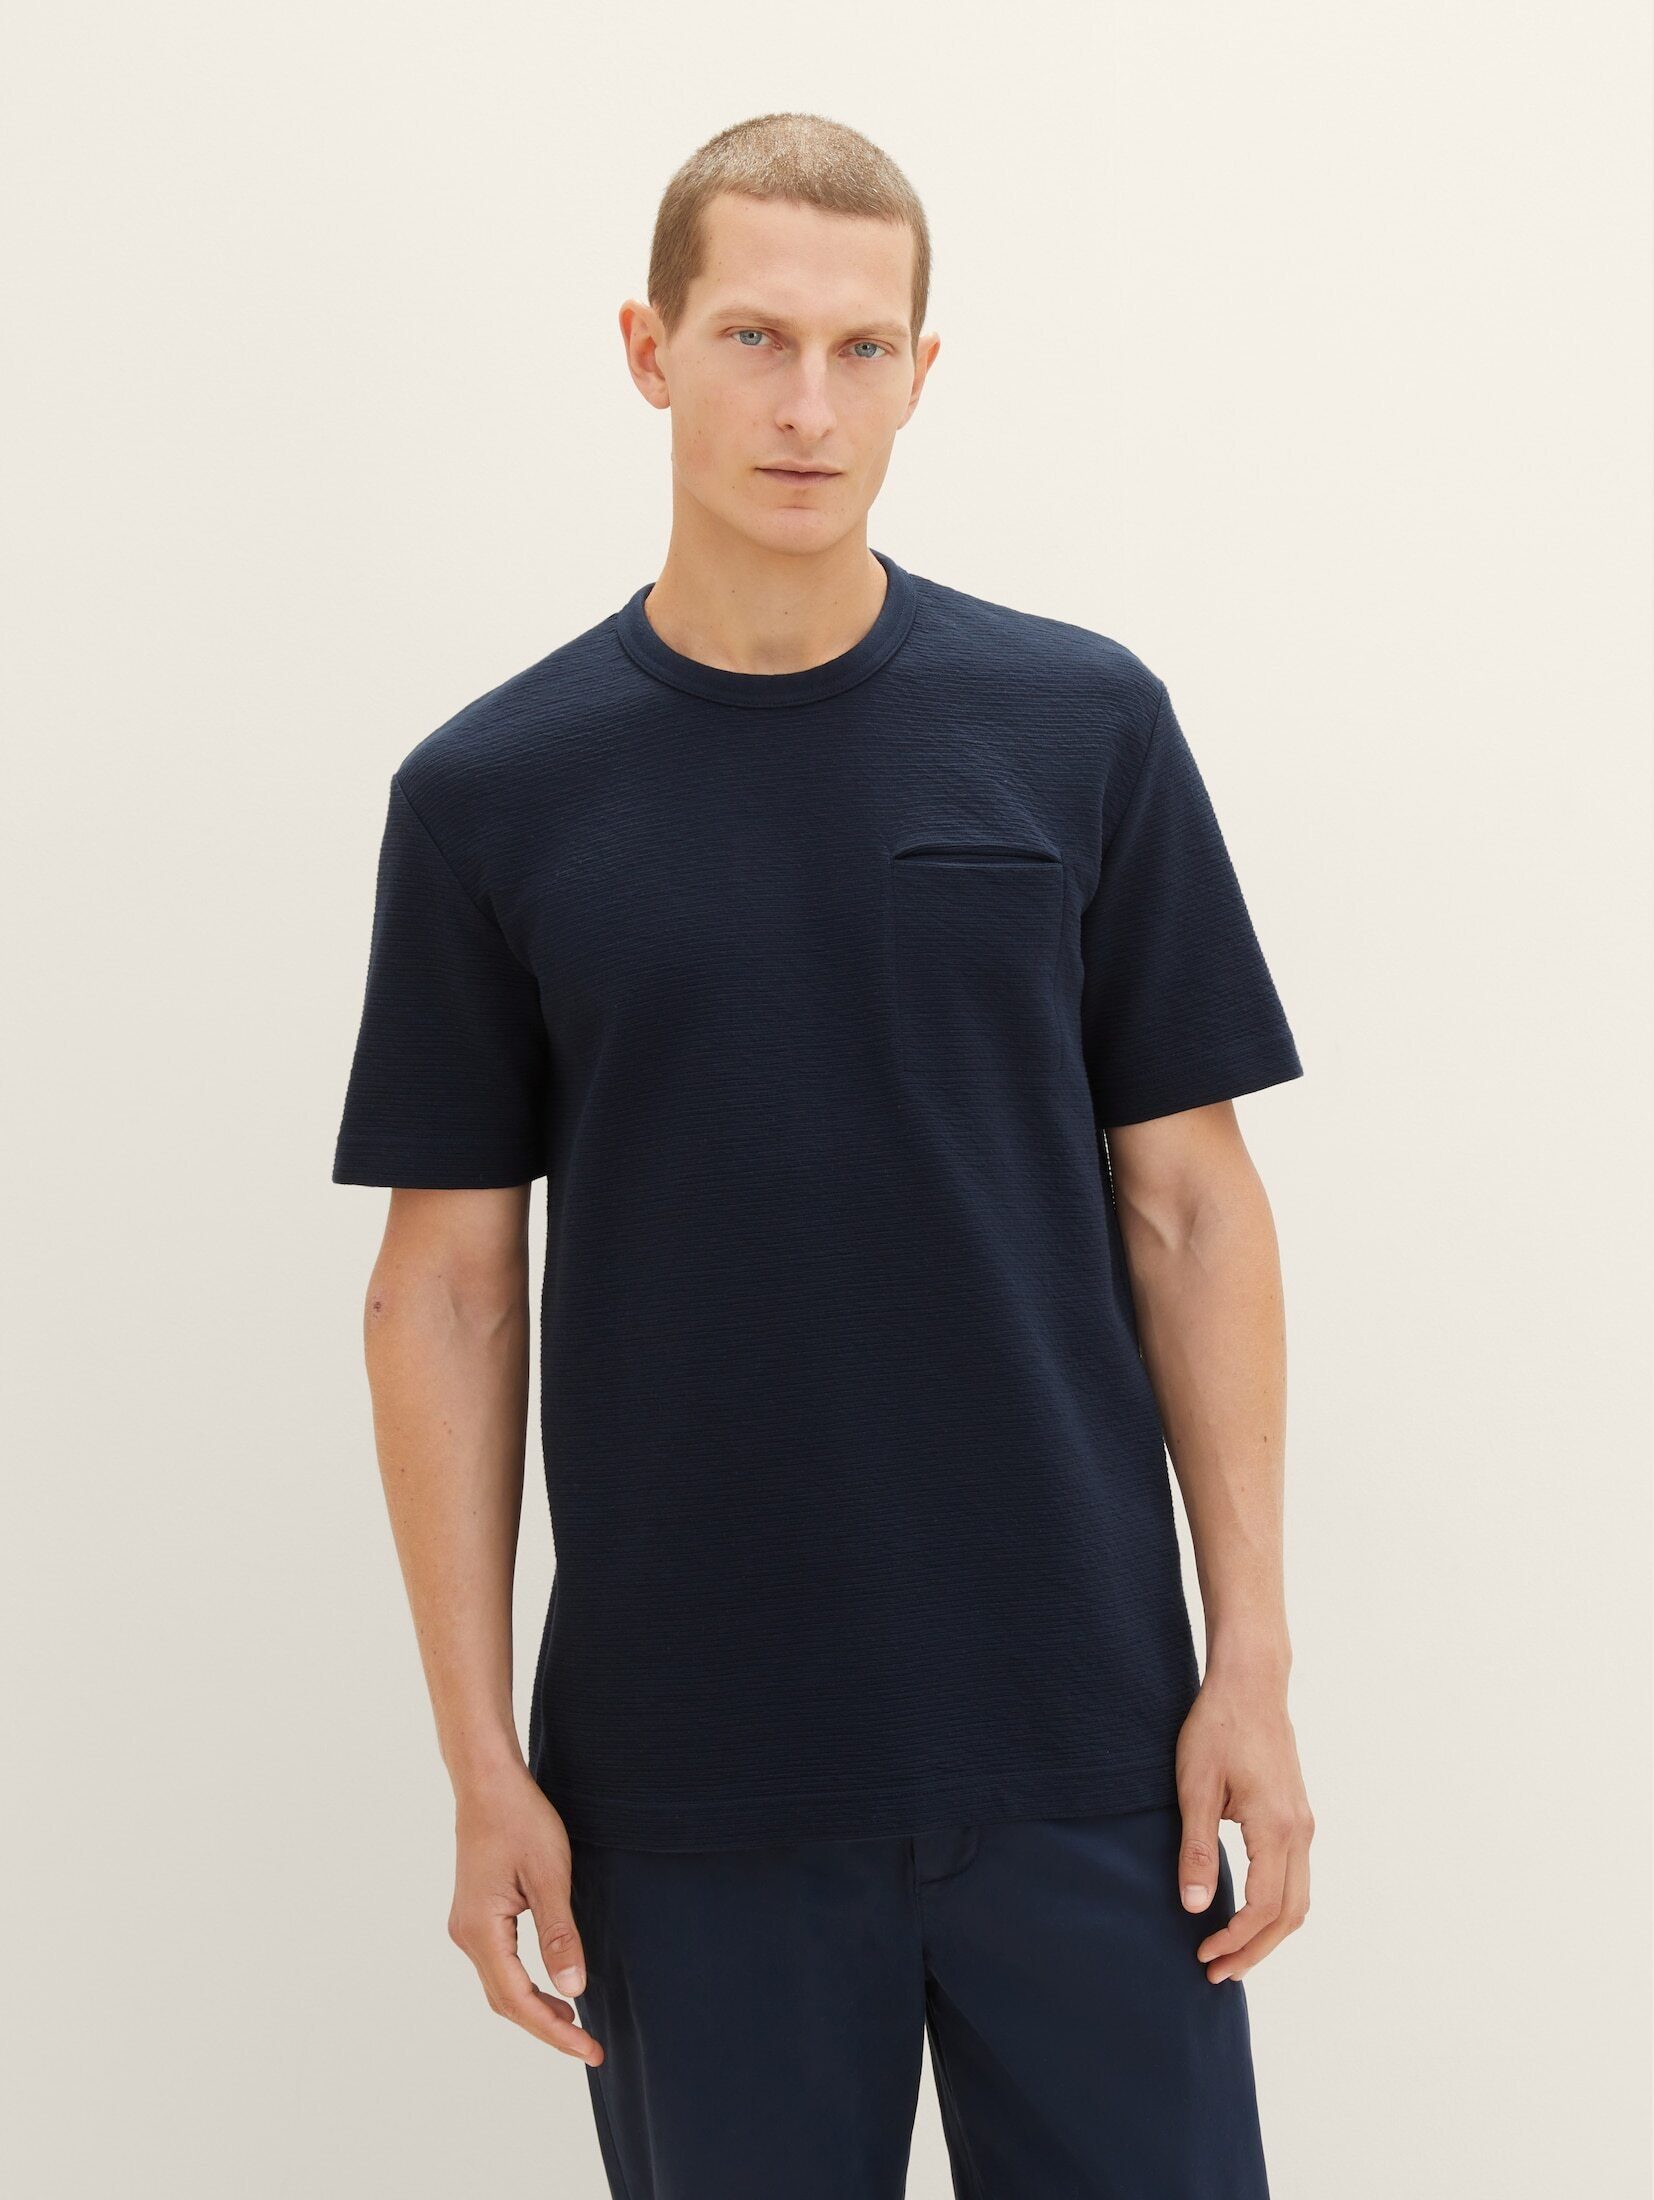 TOM TAILOR T-Shirt T-Shirt mit Struktur sky captain blue